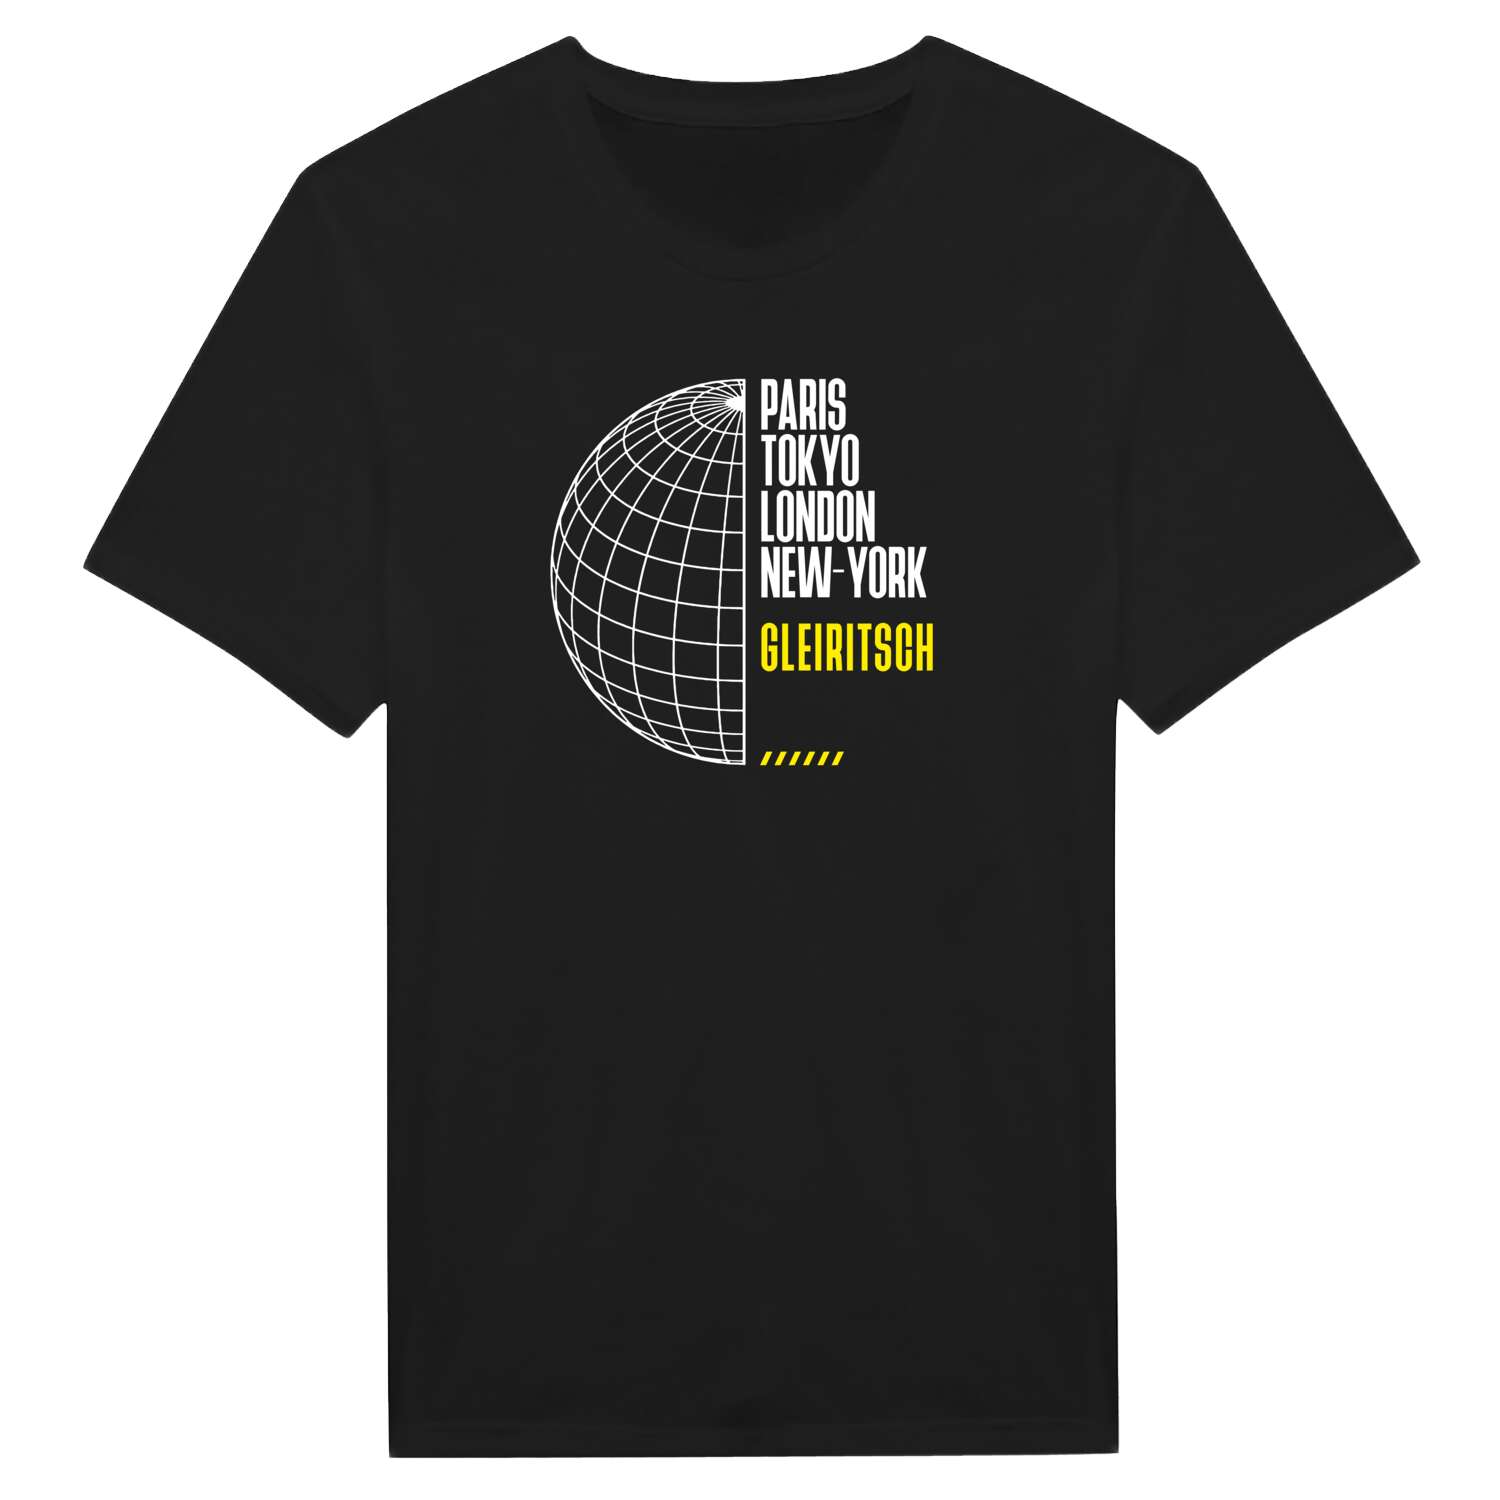 Gleiritsch T-Shirt »Paris Tokyo London«